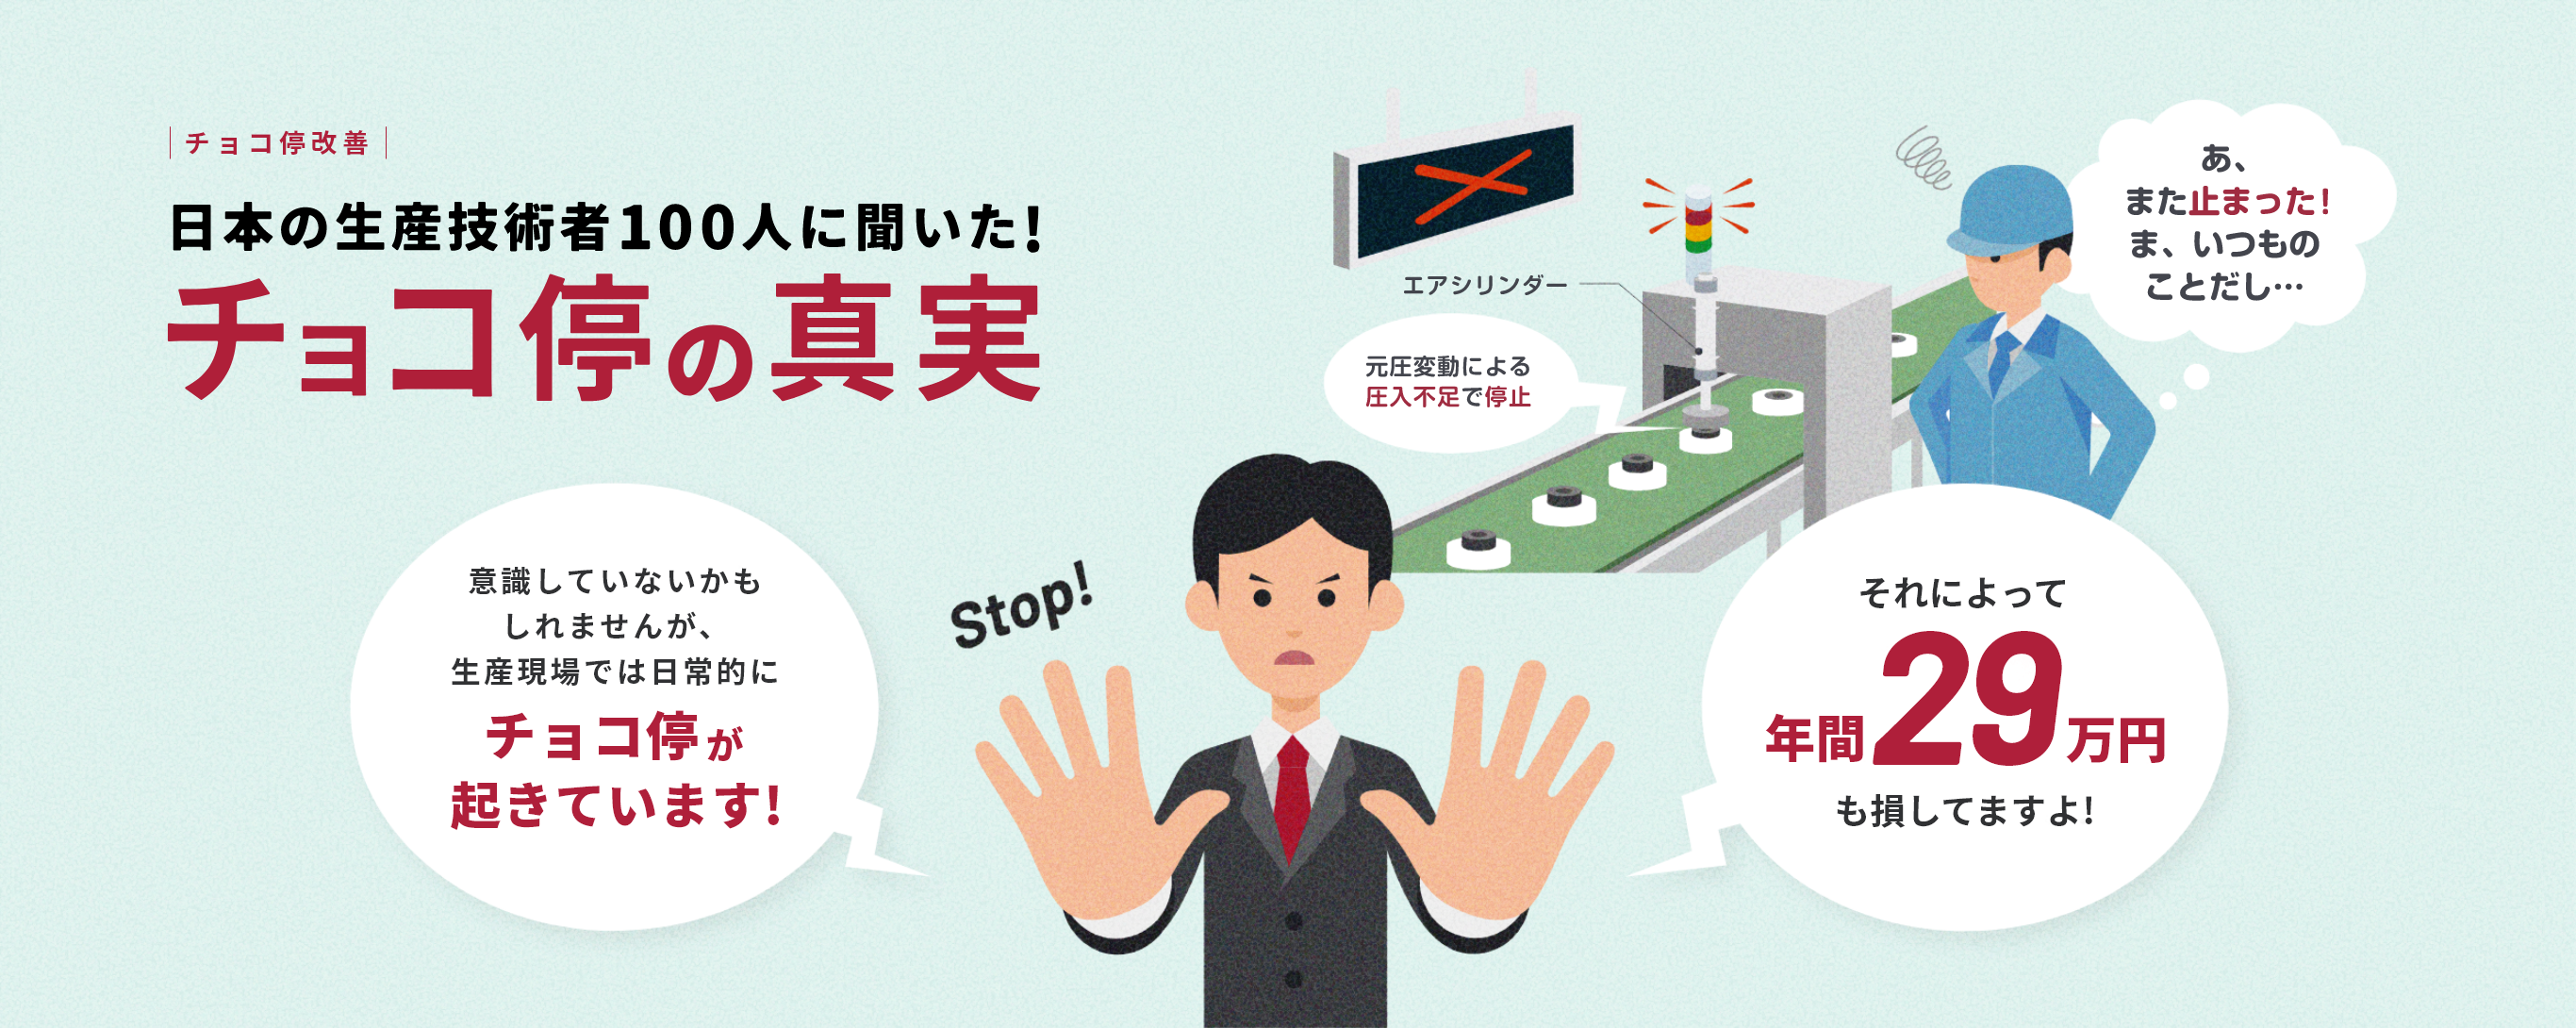 เราได้สอบถามวิศวกรฝ่ายผลิตชาวญี่ปุ่นกว่า 100 คน! ความจริงเกี่ยวกับการหยุดชะงักของไลน์ชั่วเวลาสั้นๆ